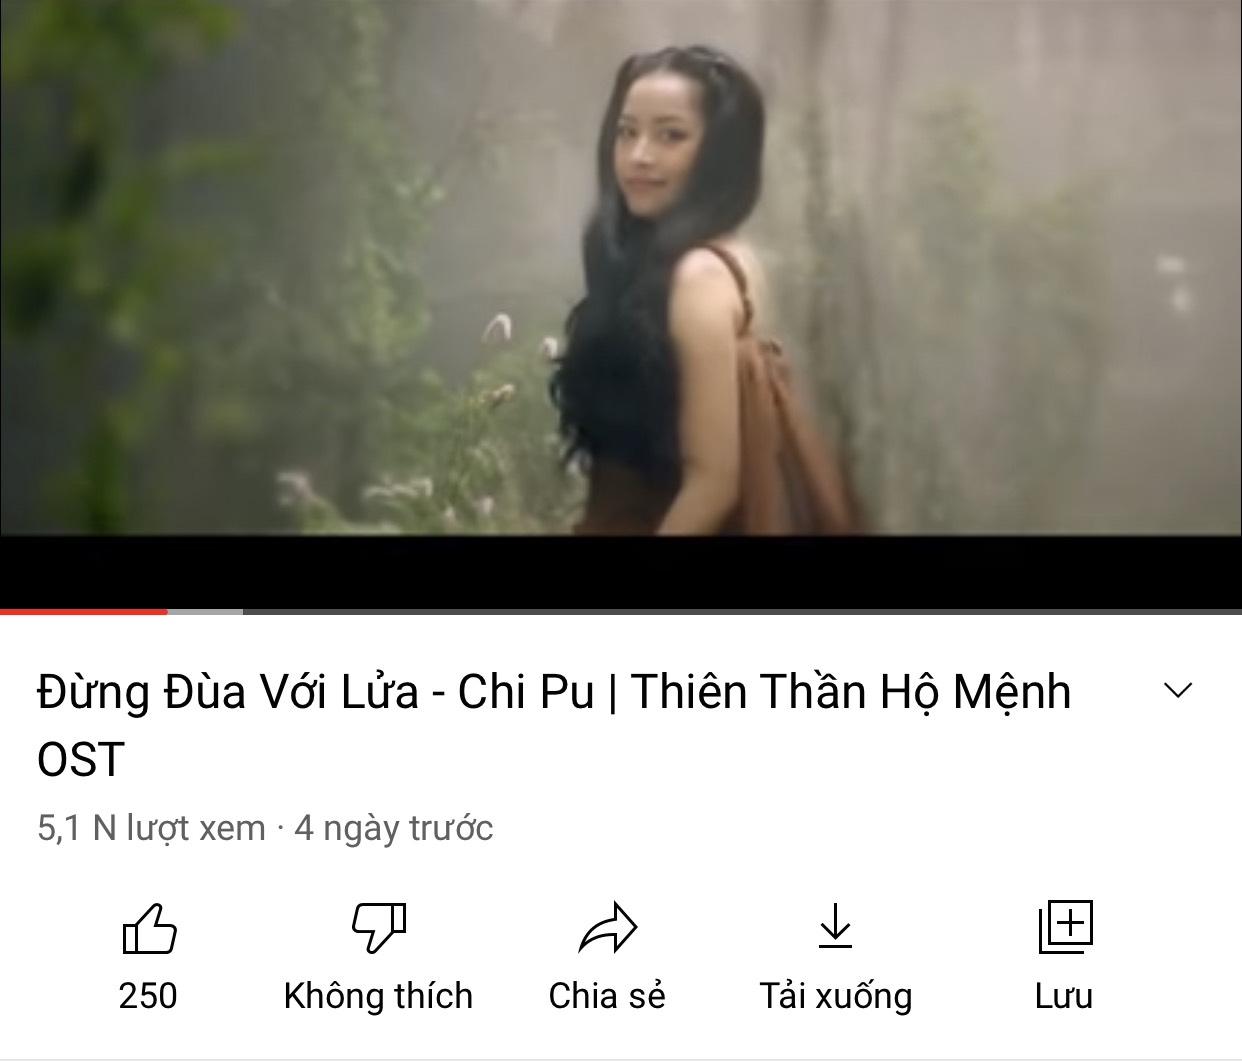 MV 'Đừng đùa với lửa' của Chi Pu vừa được đăng tải cách đây ít ngày nhưng thành tích lại vô cùng thấp